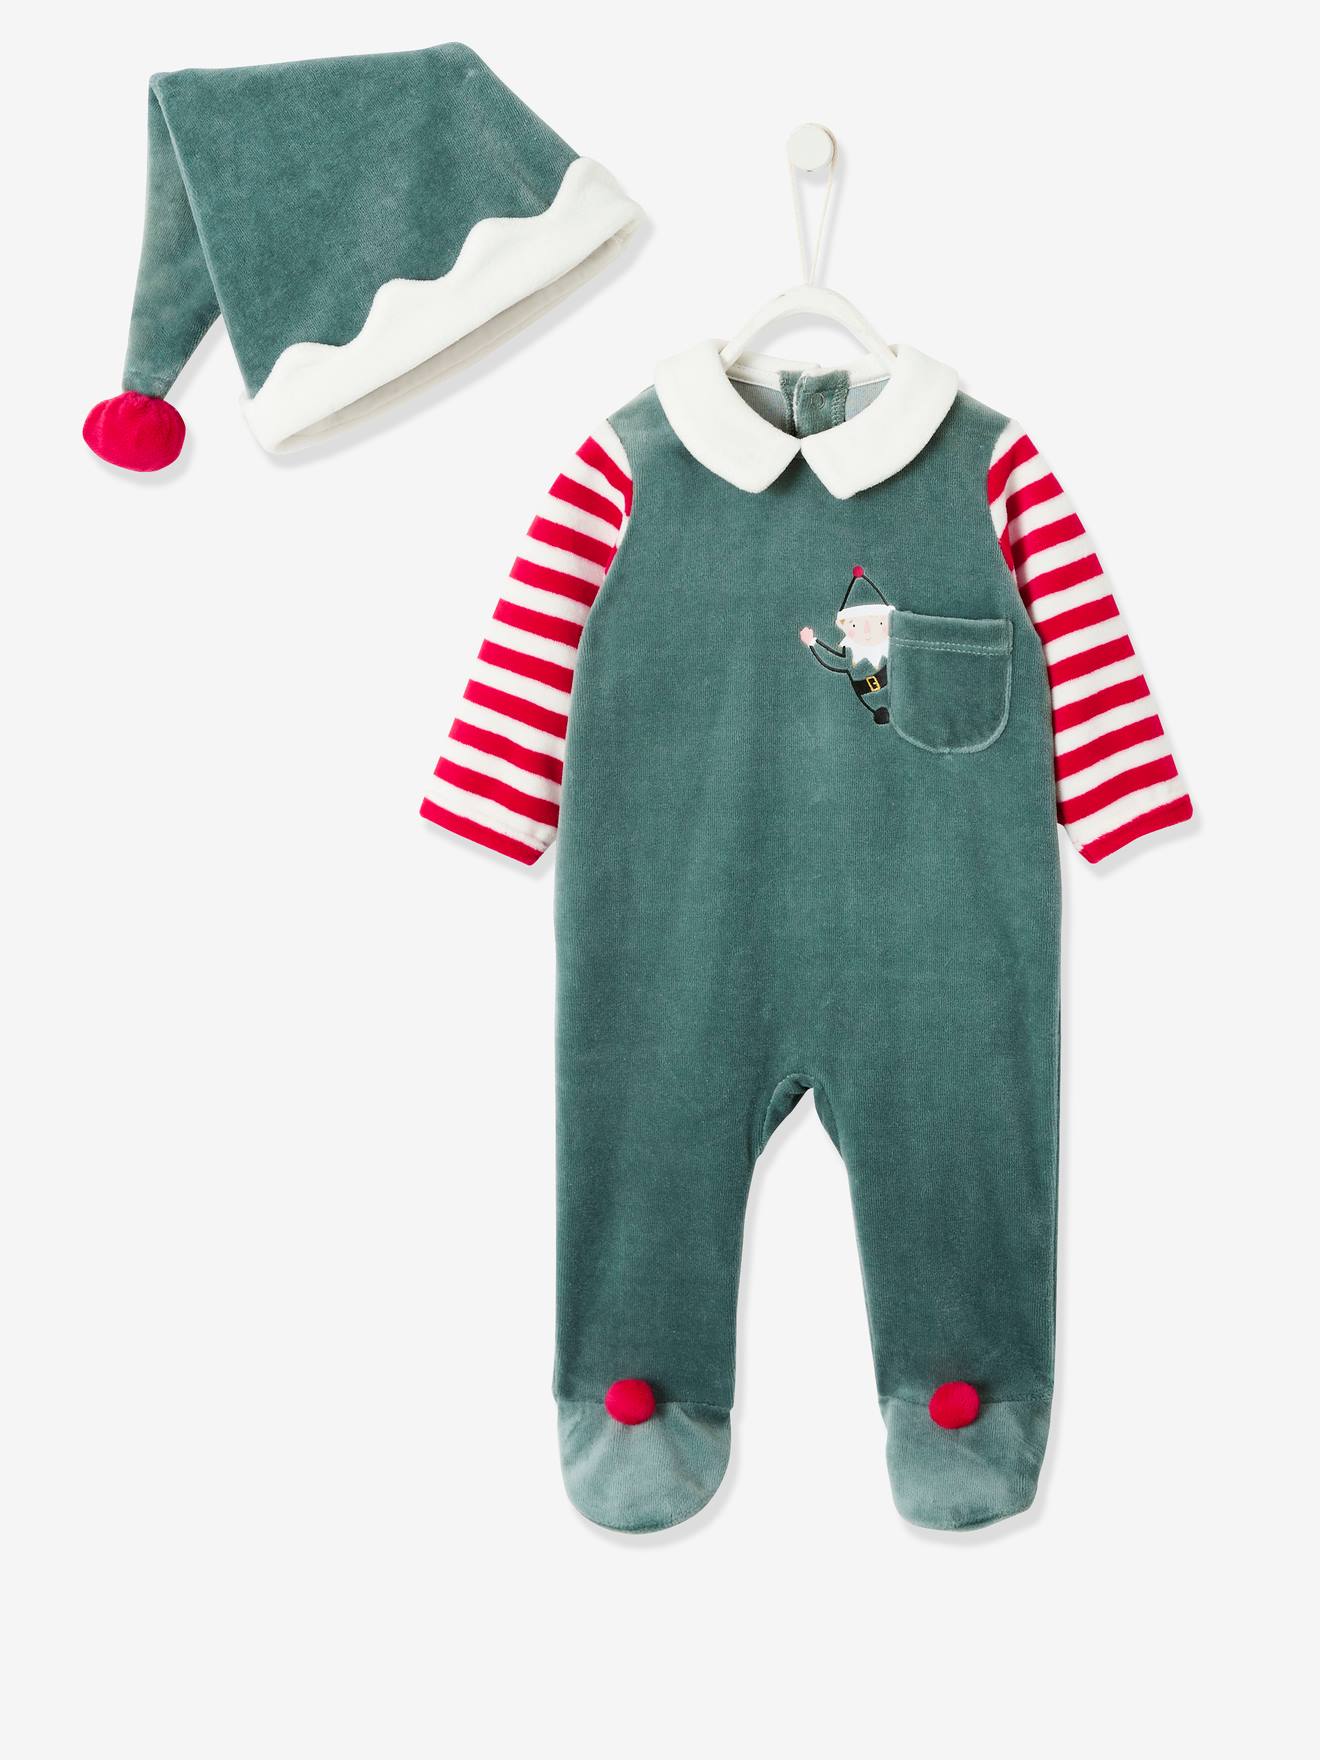 https://media.vertbaudet.com/Pictures/vertbaudet/163751/unisex-christmas-set-sleepsuit-beanie-for-babies.jpg